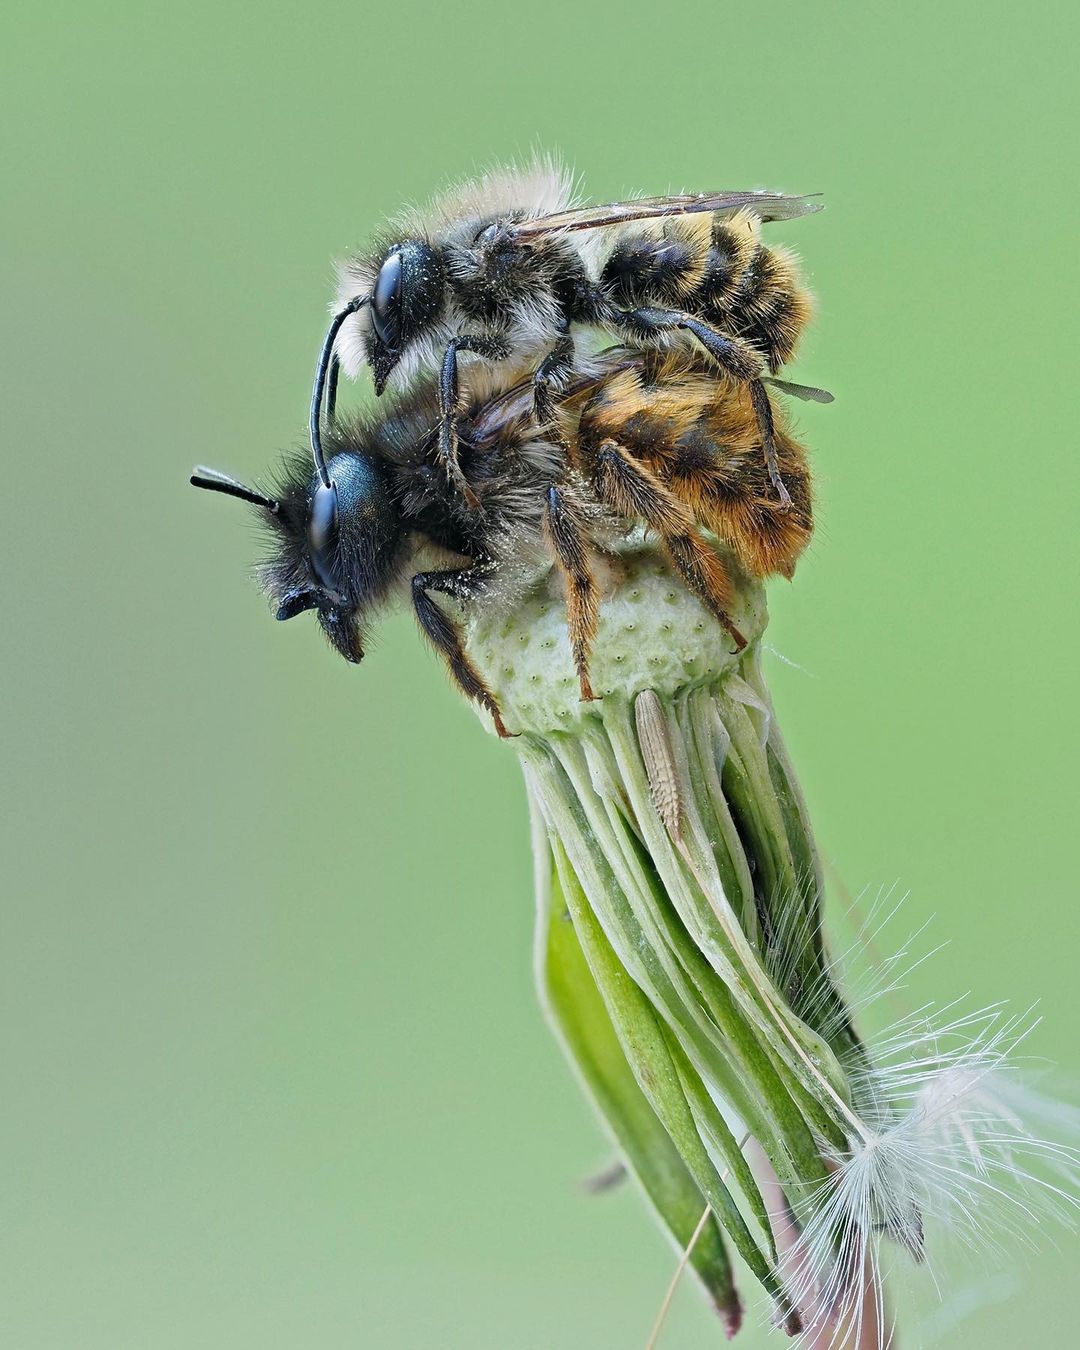 Types Of Bees- Mason bees